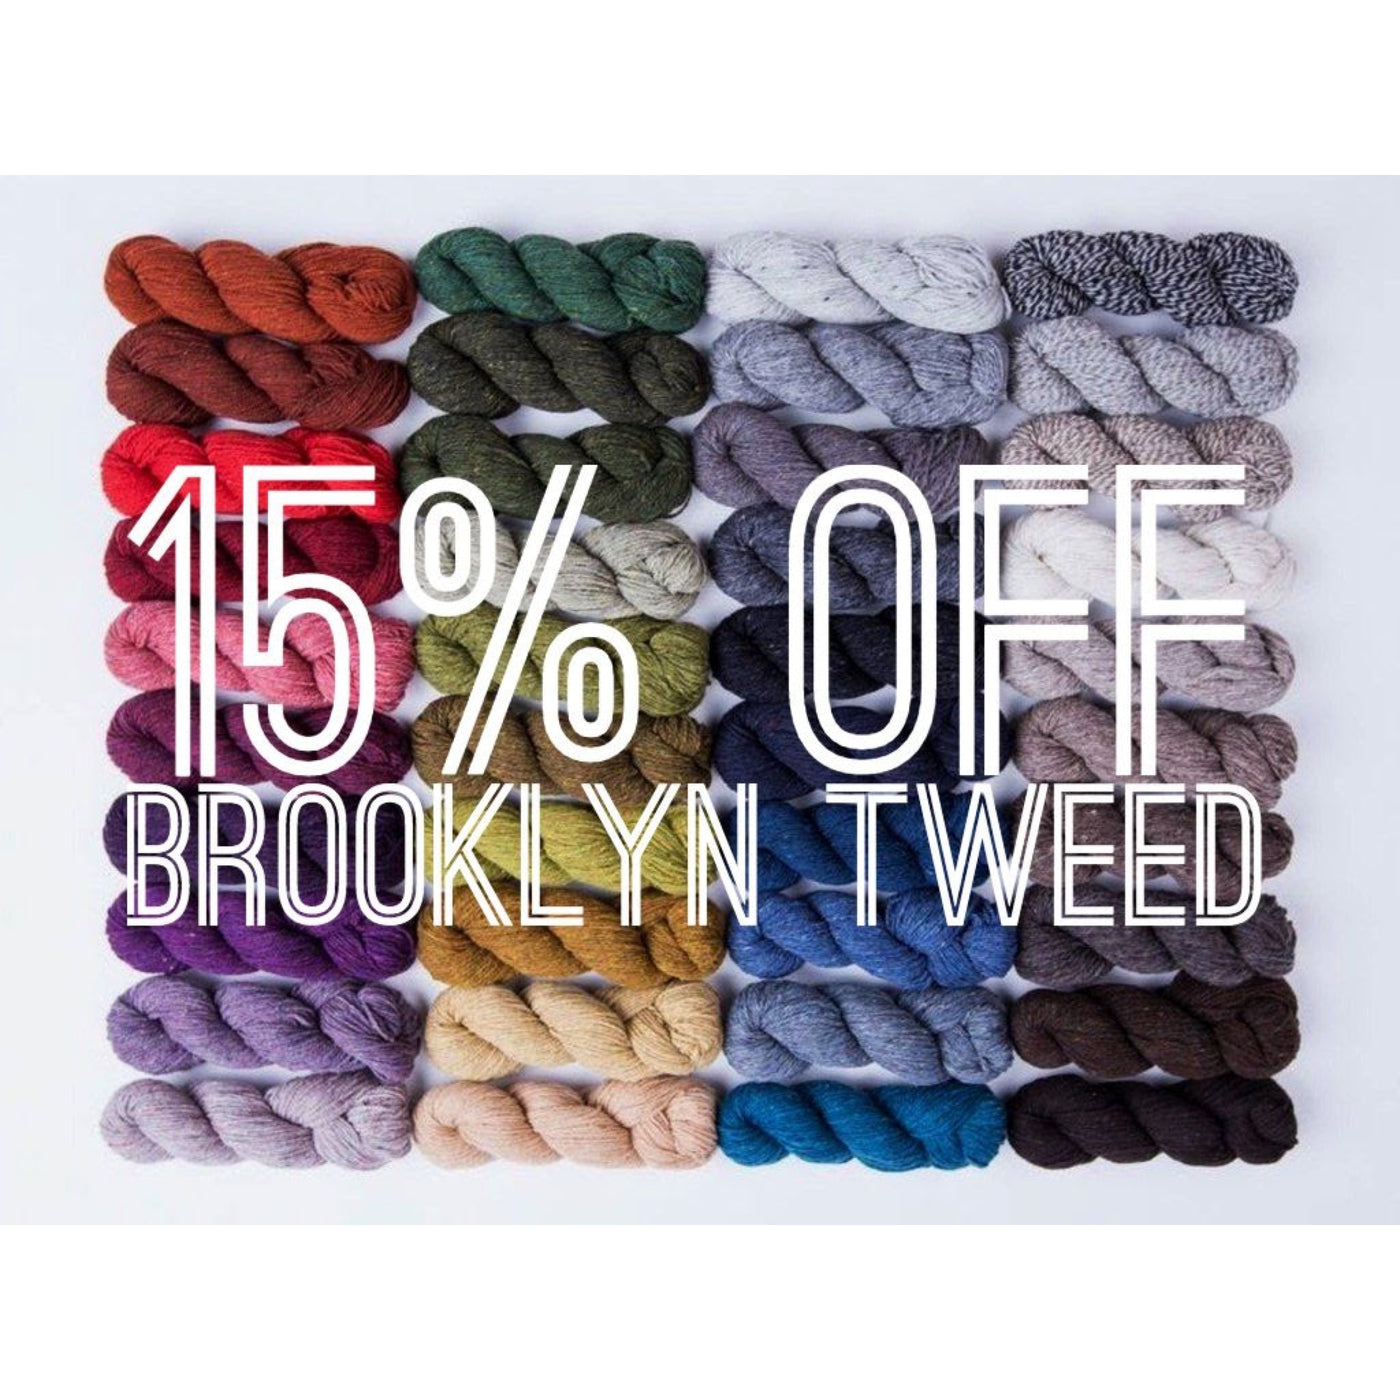 15% of brooklyn tweed